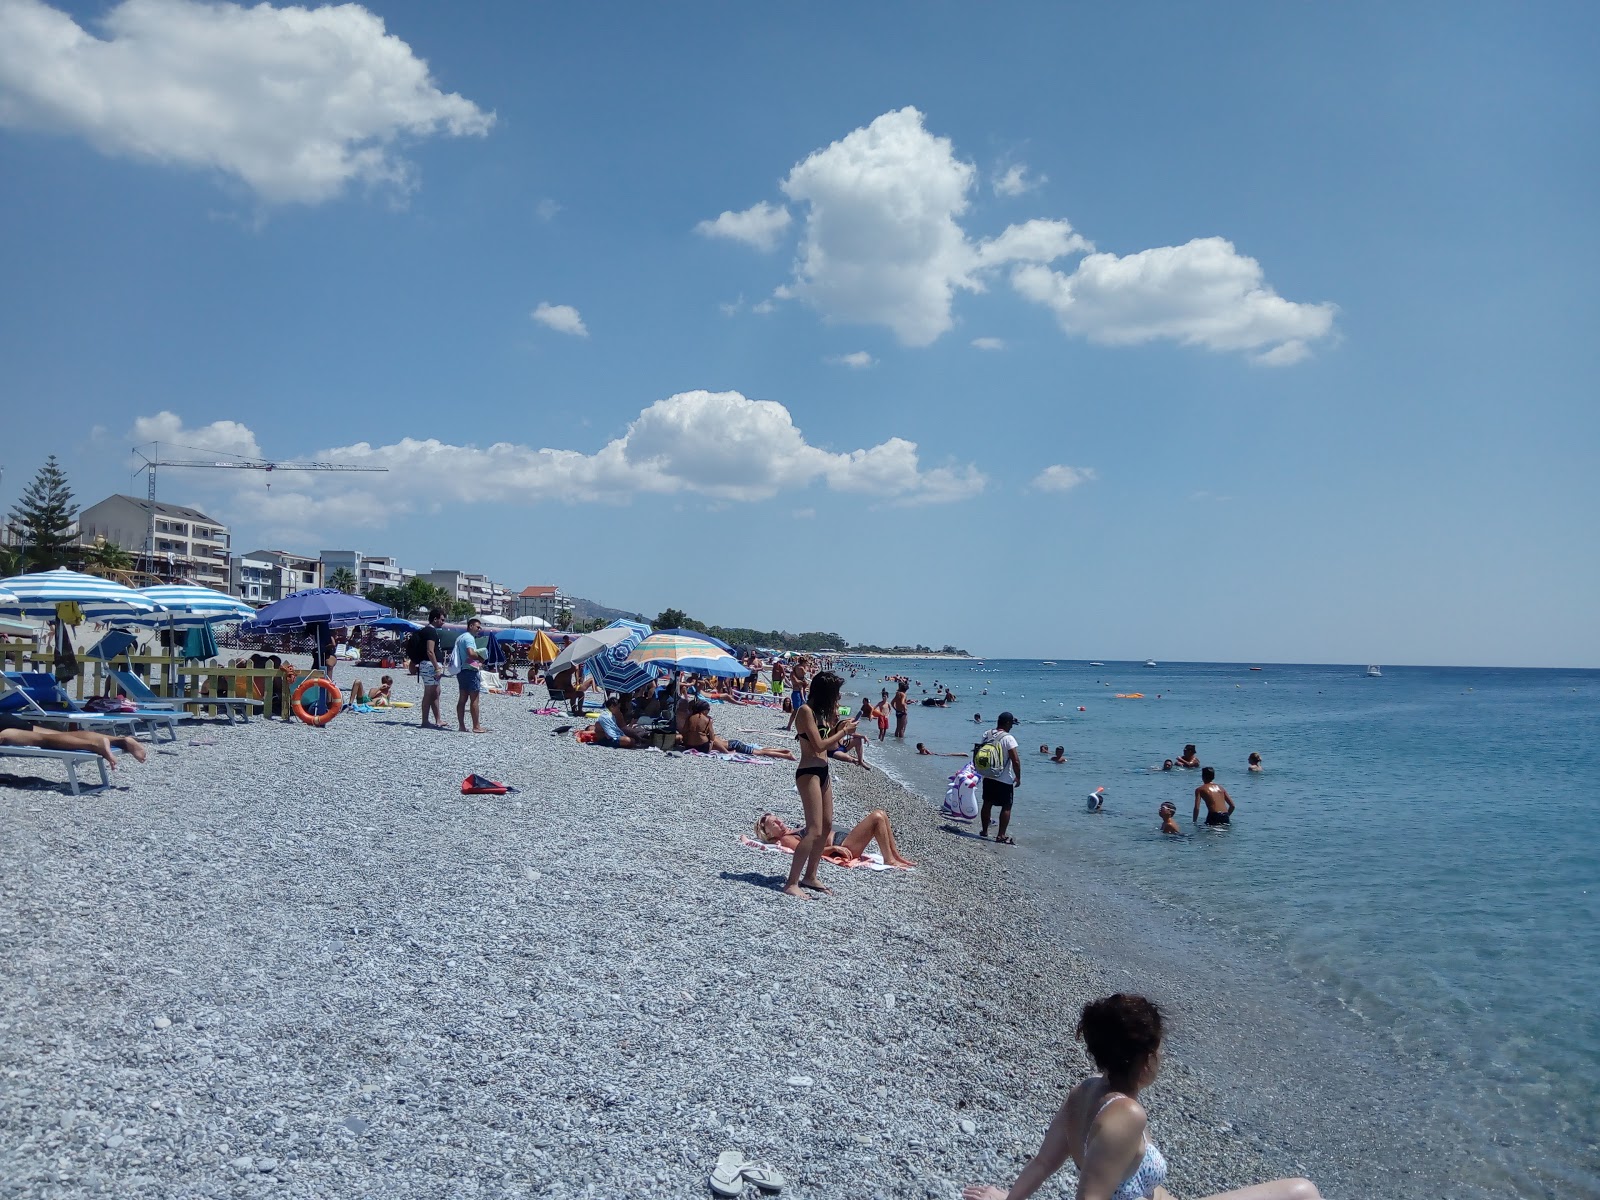 Gioiosa Jonica beach'in fotoğrafı gri ince çakıl taş yüzey ile